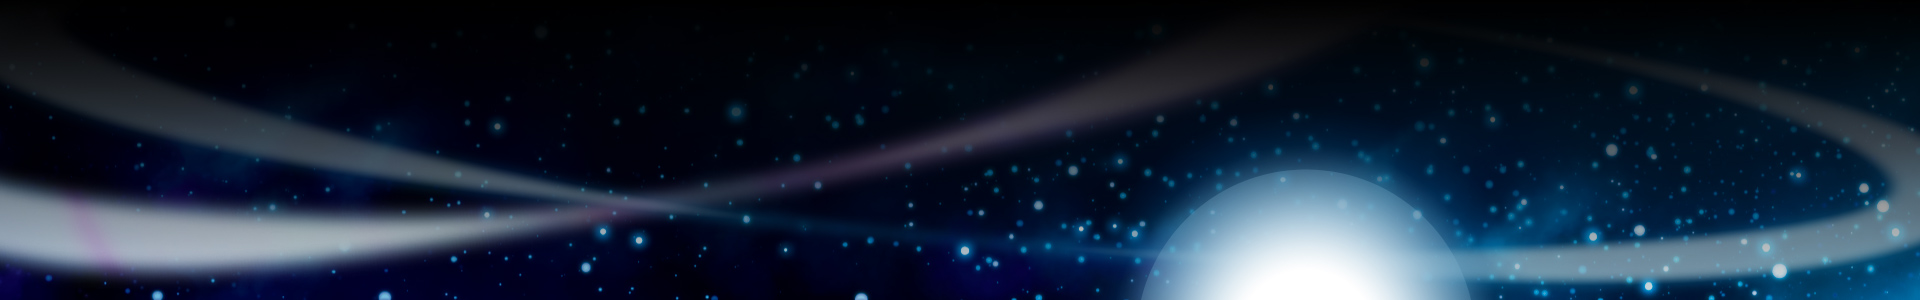 Стилизованное изображение сонных звезд в космосе.